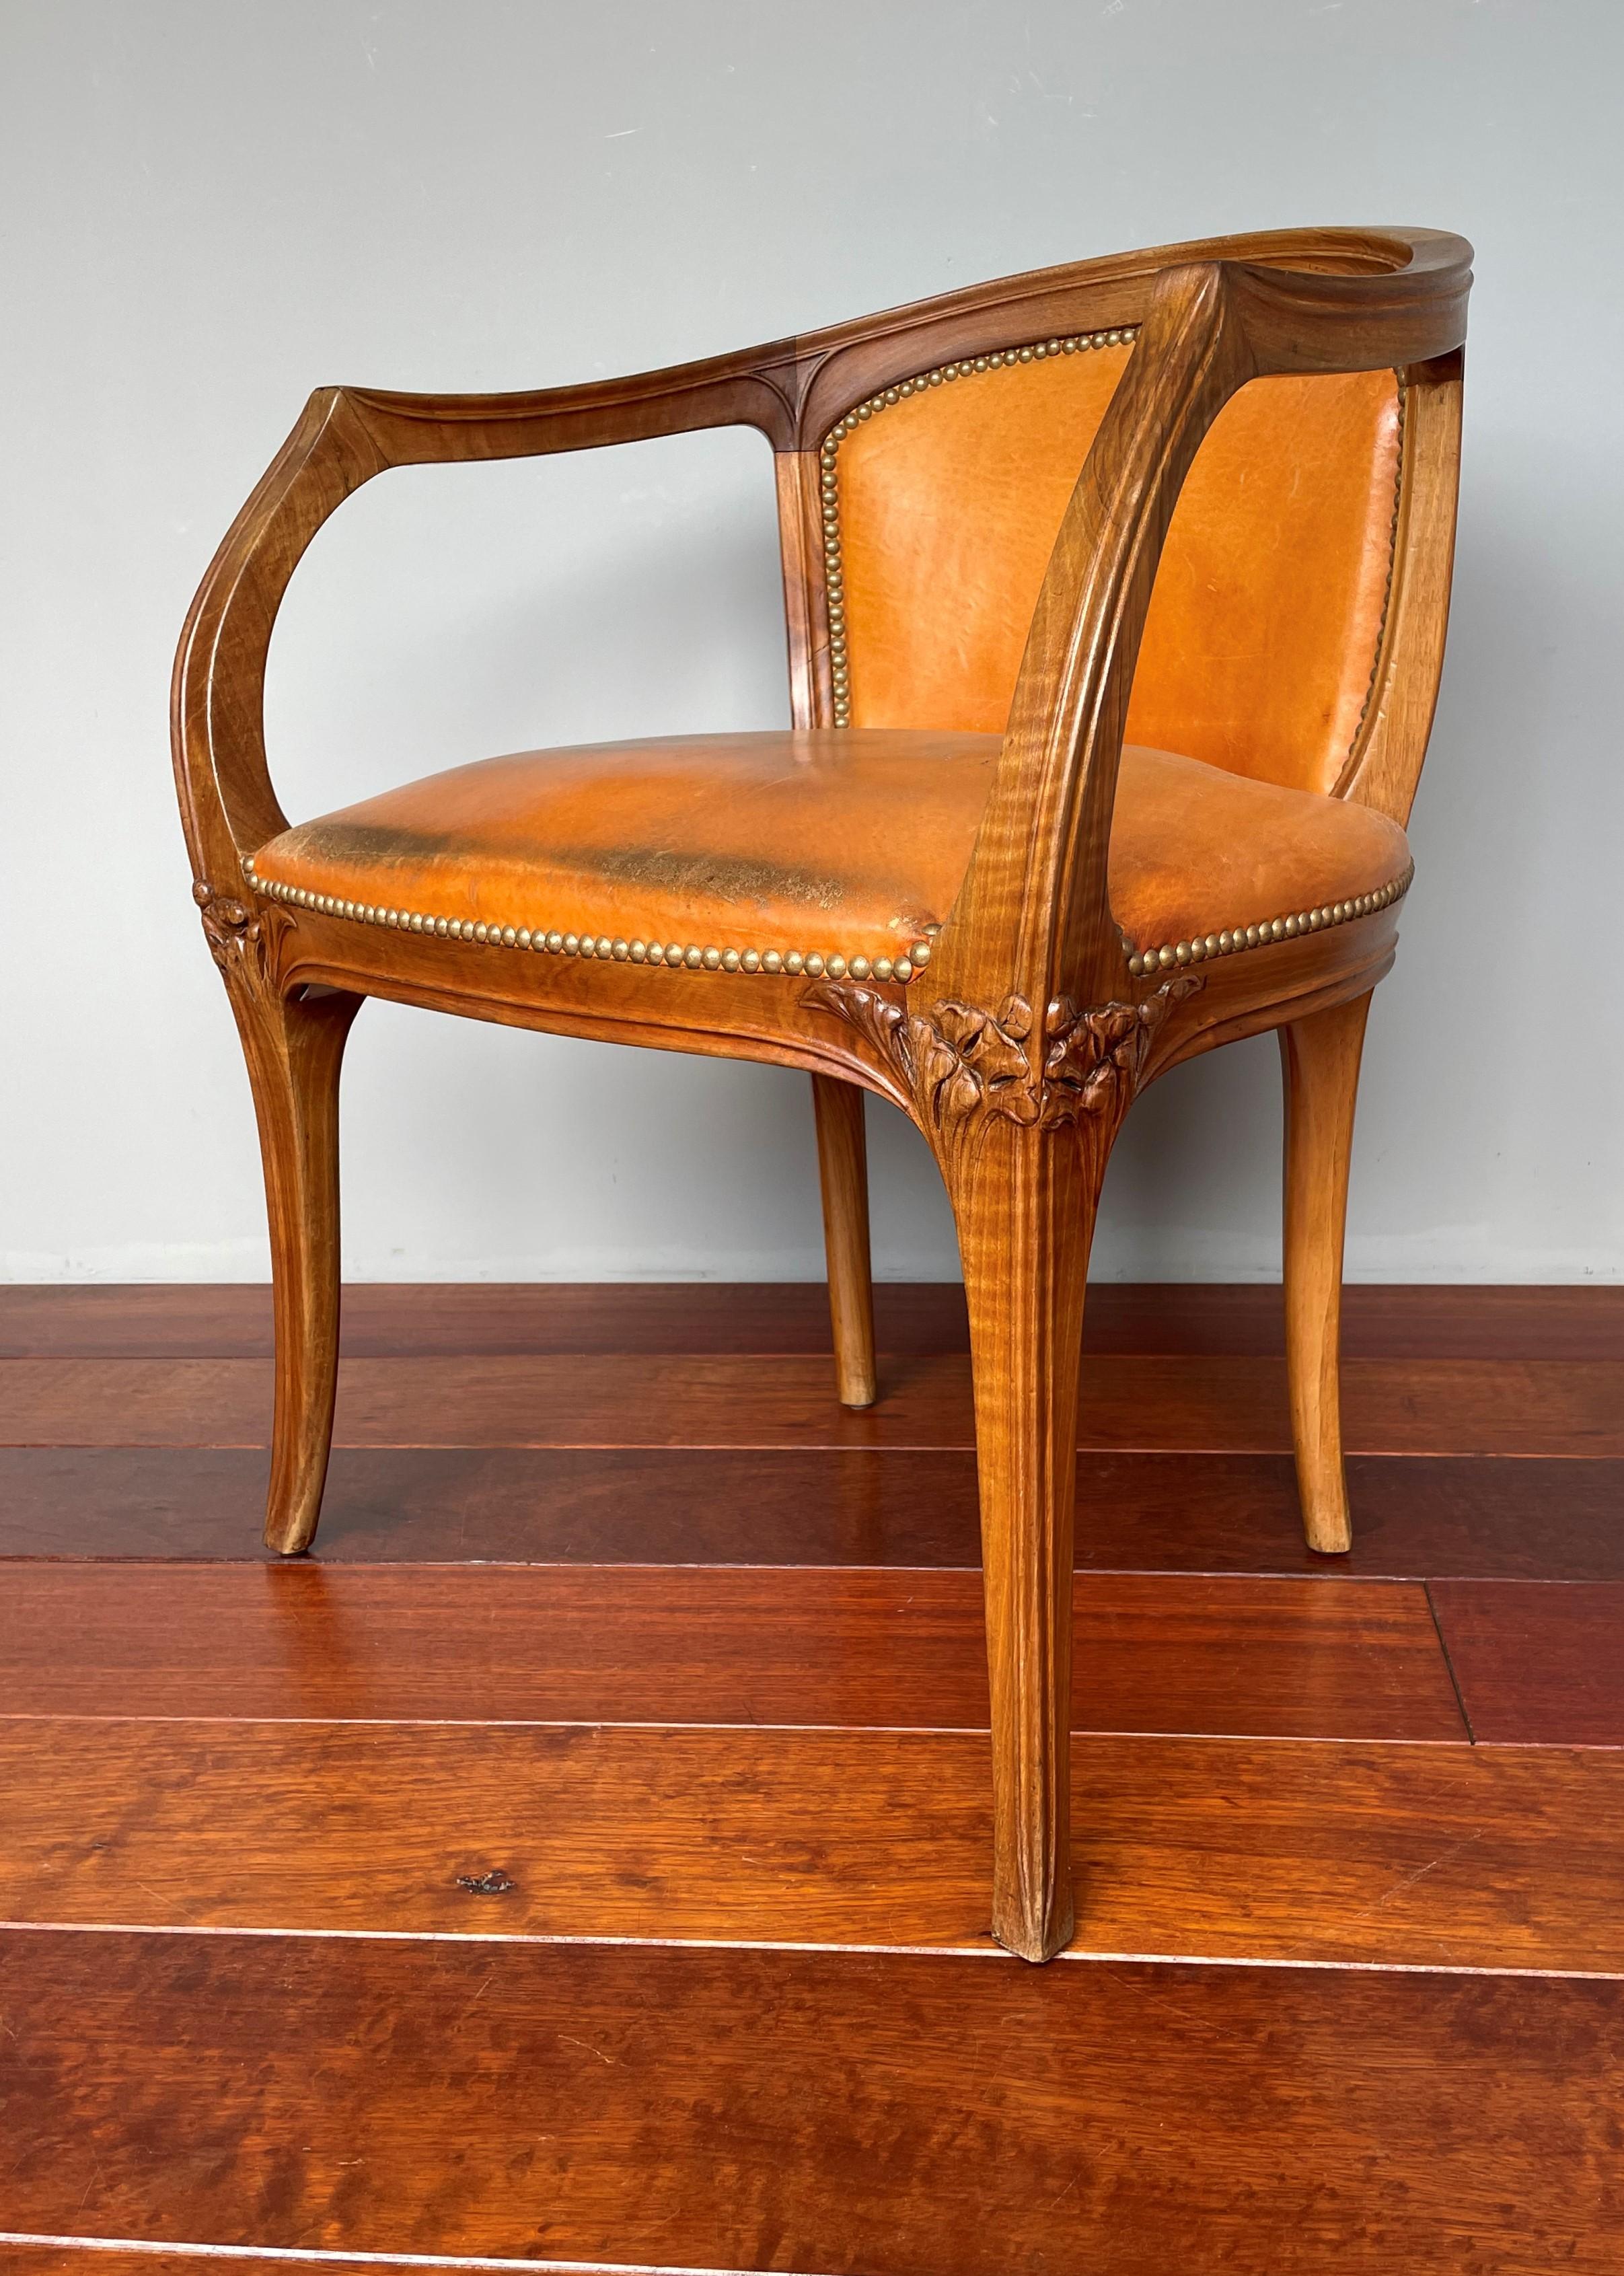 20th Century Important Louis Majorelle Art Nouveau Desk and Chair, Bookcase & Filing Cabinet For Sale